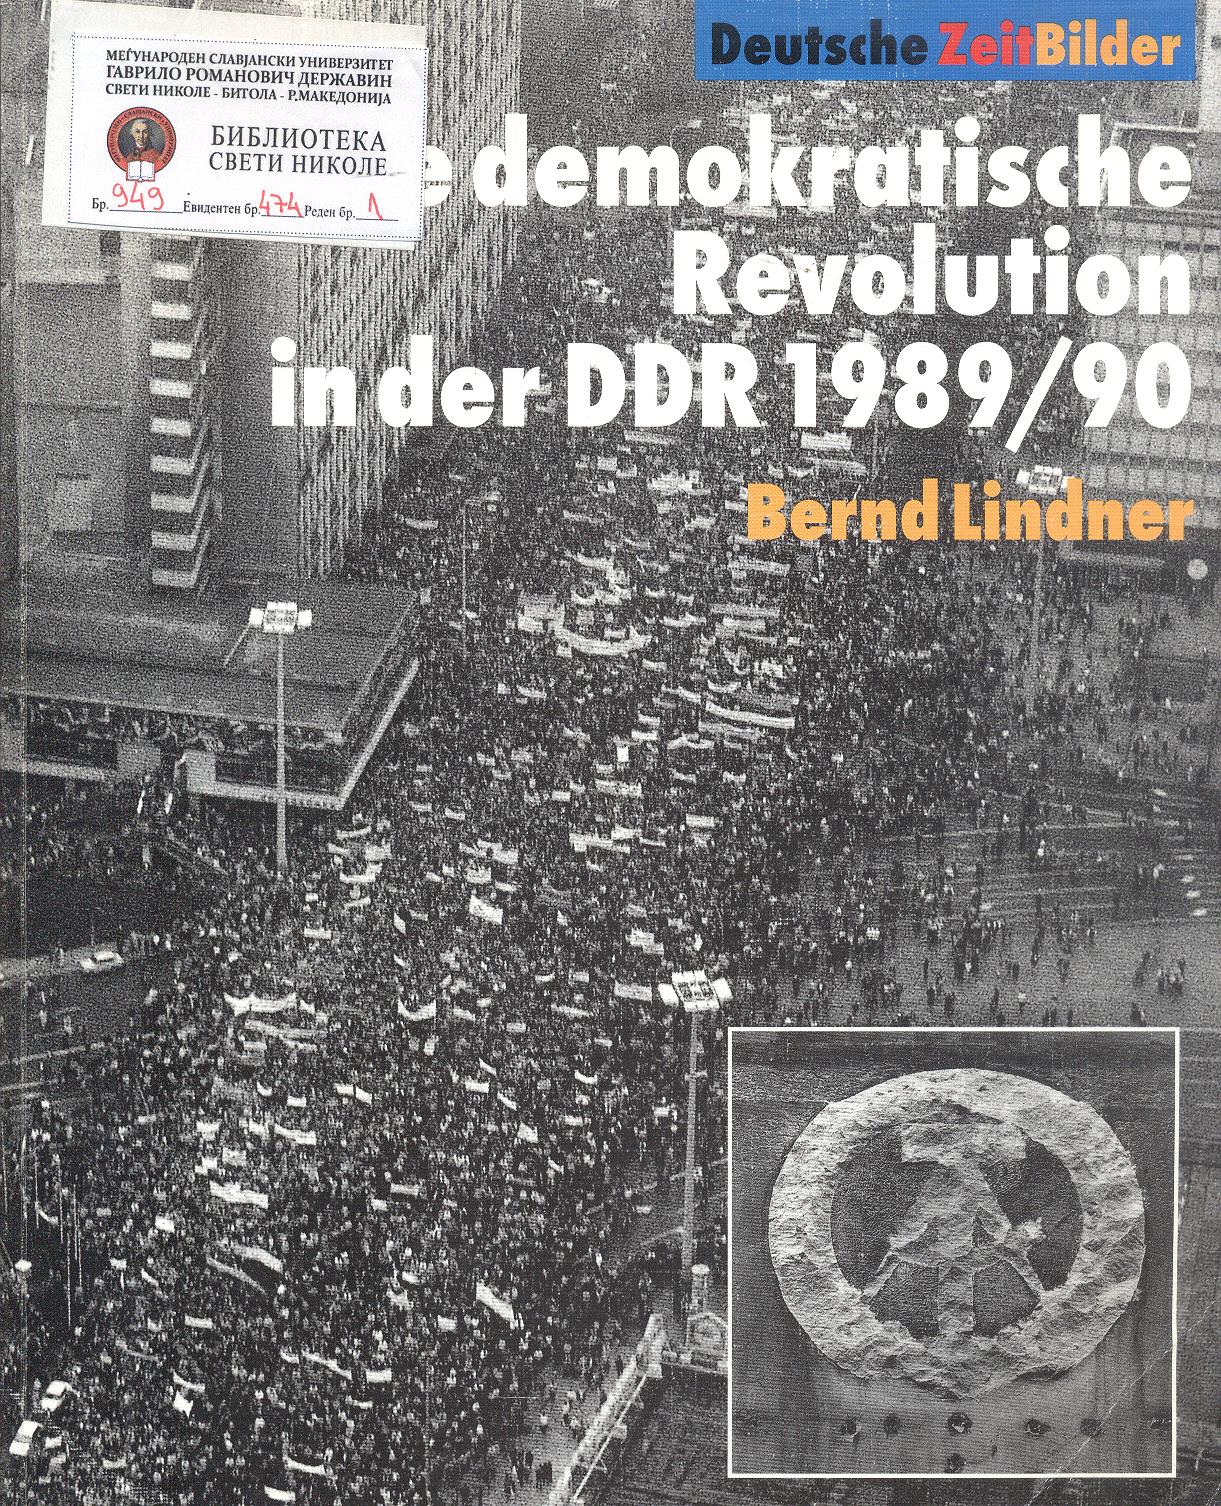 Die demokratische Revolution in der DDR 1989/90